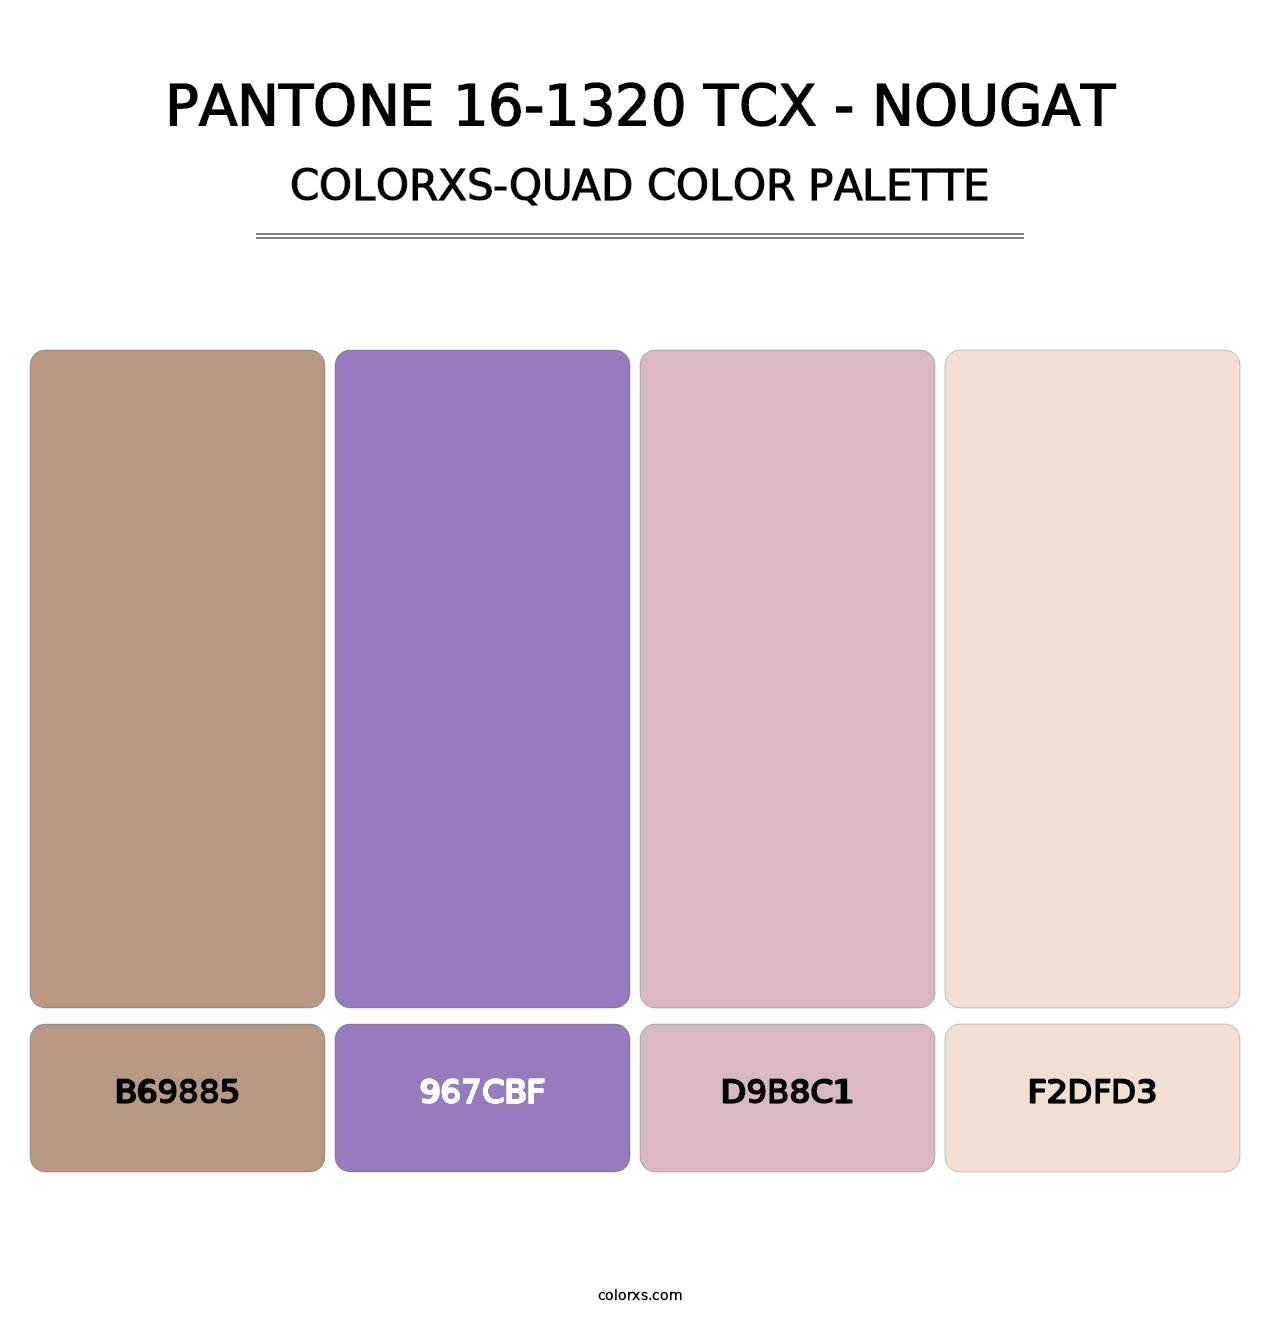 PANTONE 16-1320 TCX - Nougat - Colorxs Quad Palette